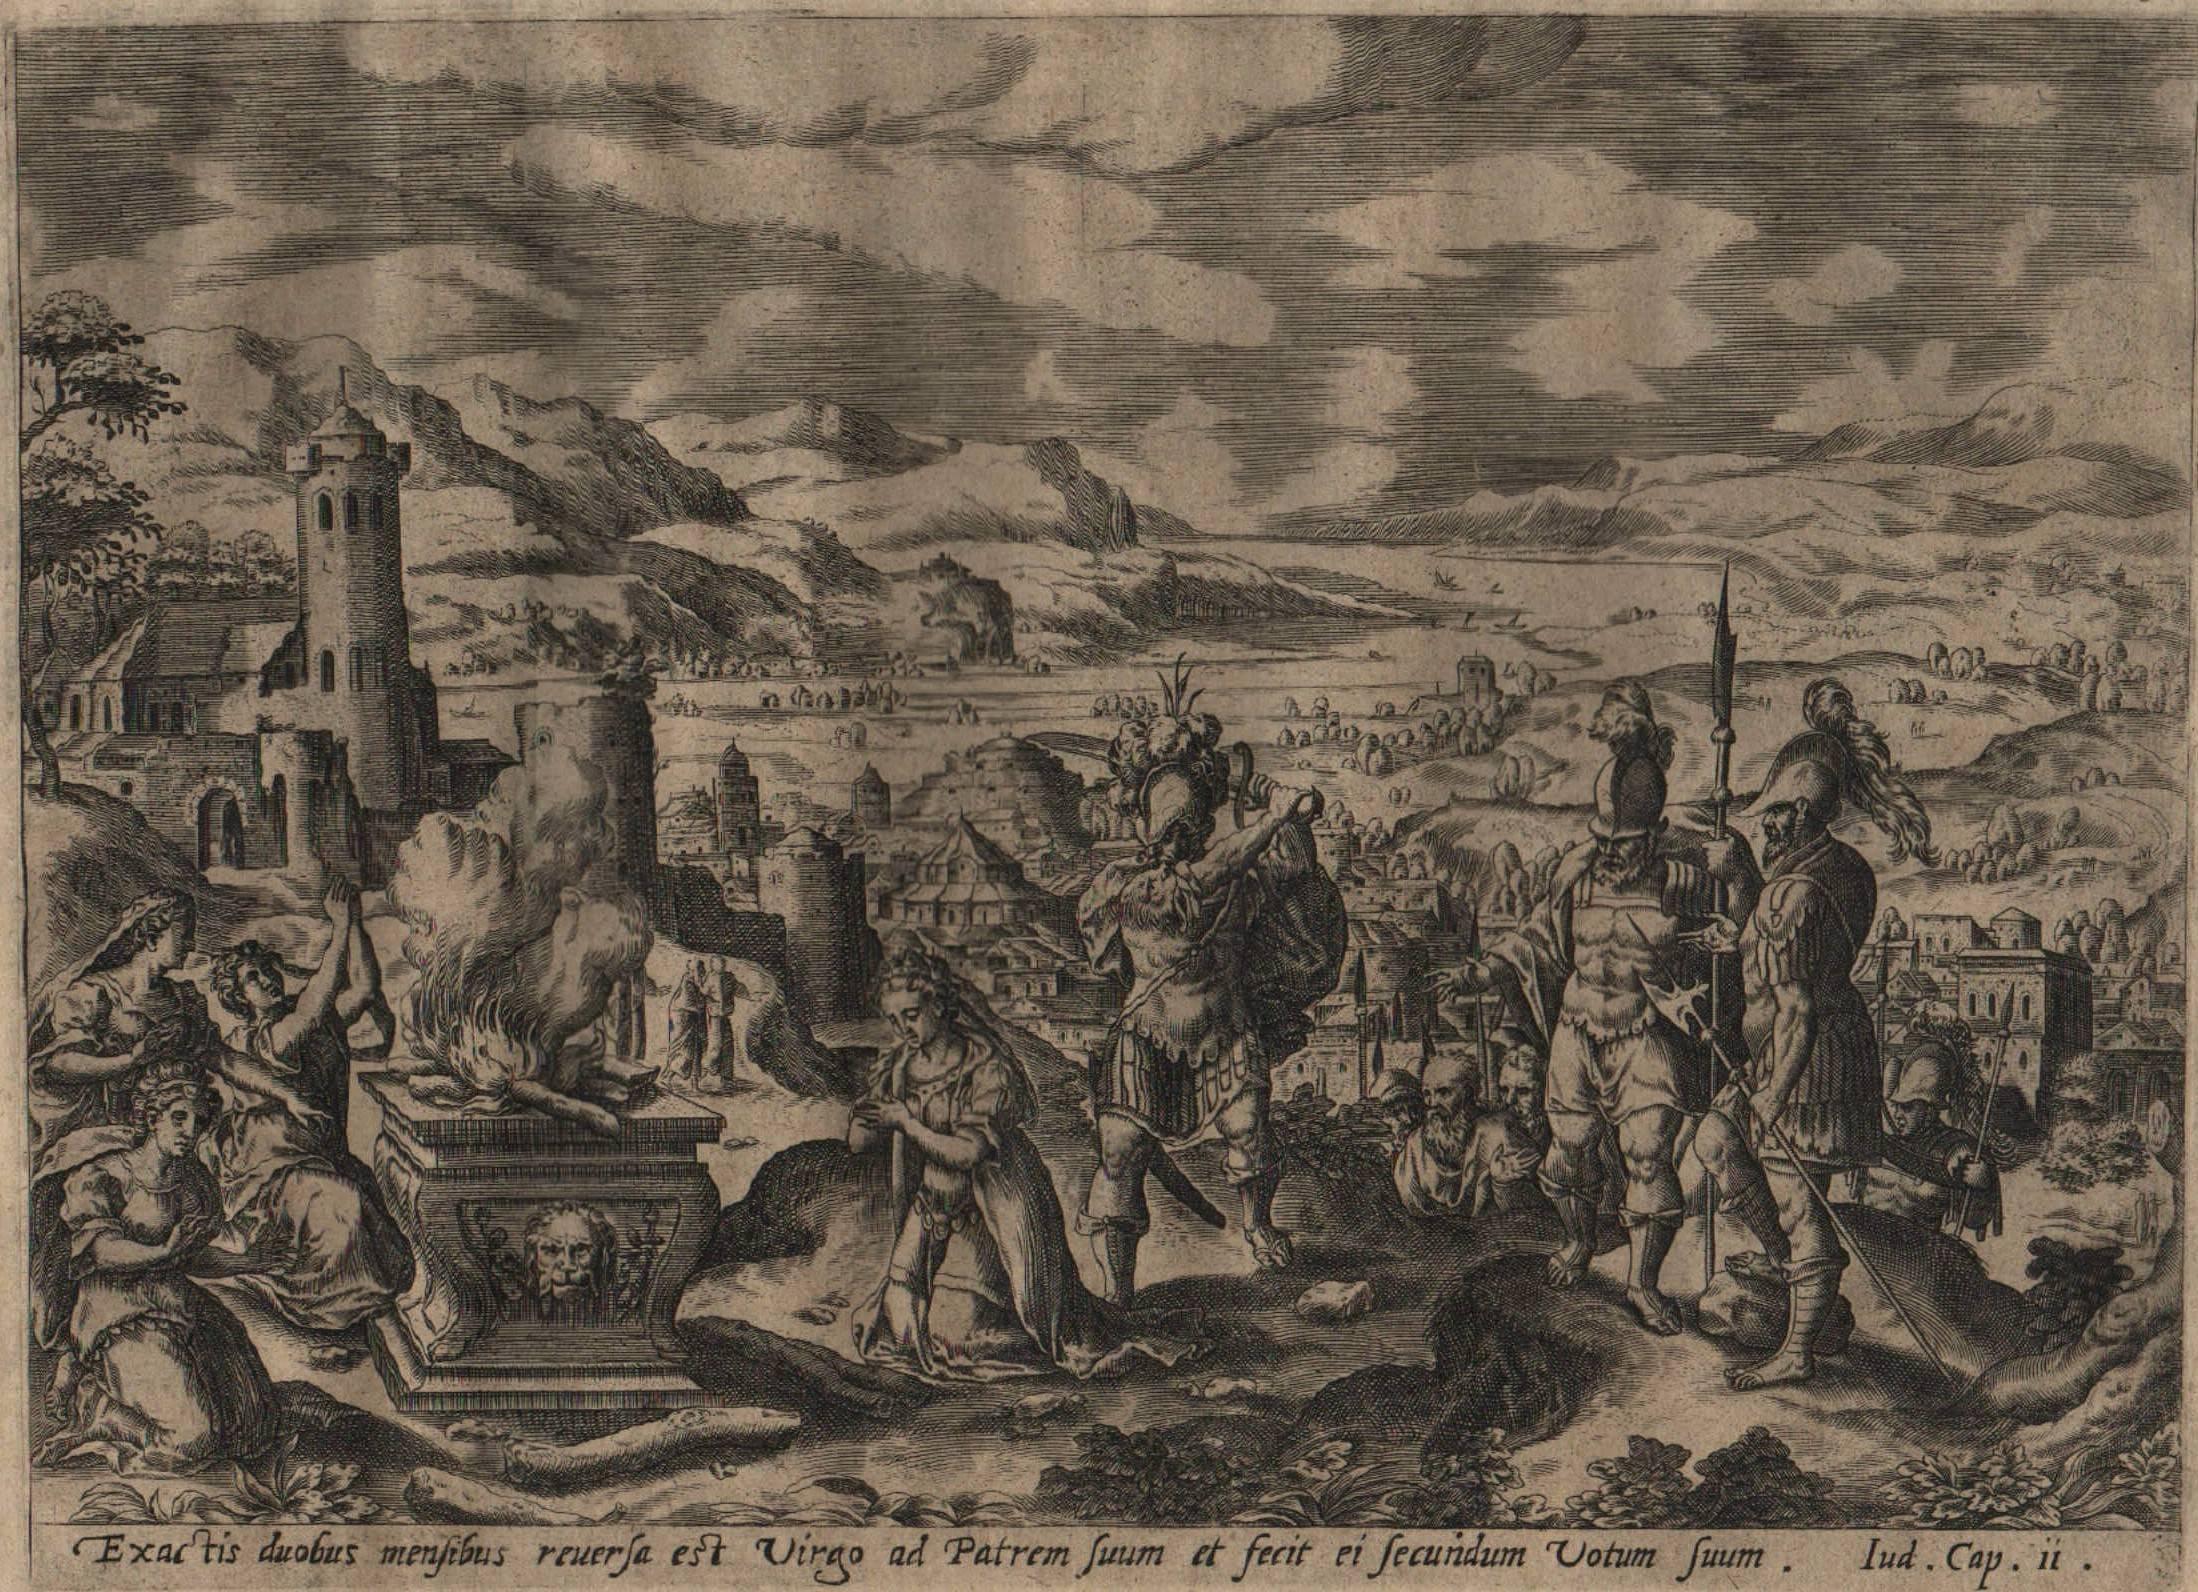 Hans Bol Landscape Print - The Story of Jephthah - 1585 Set of 4 Plates - Old Master Engraving Landscape